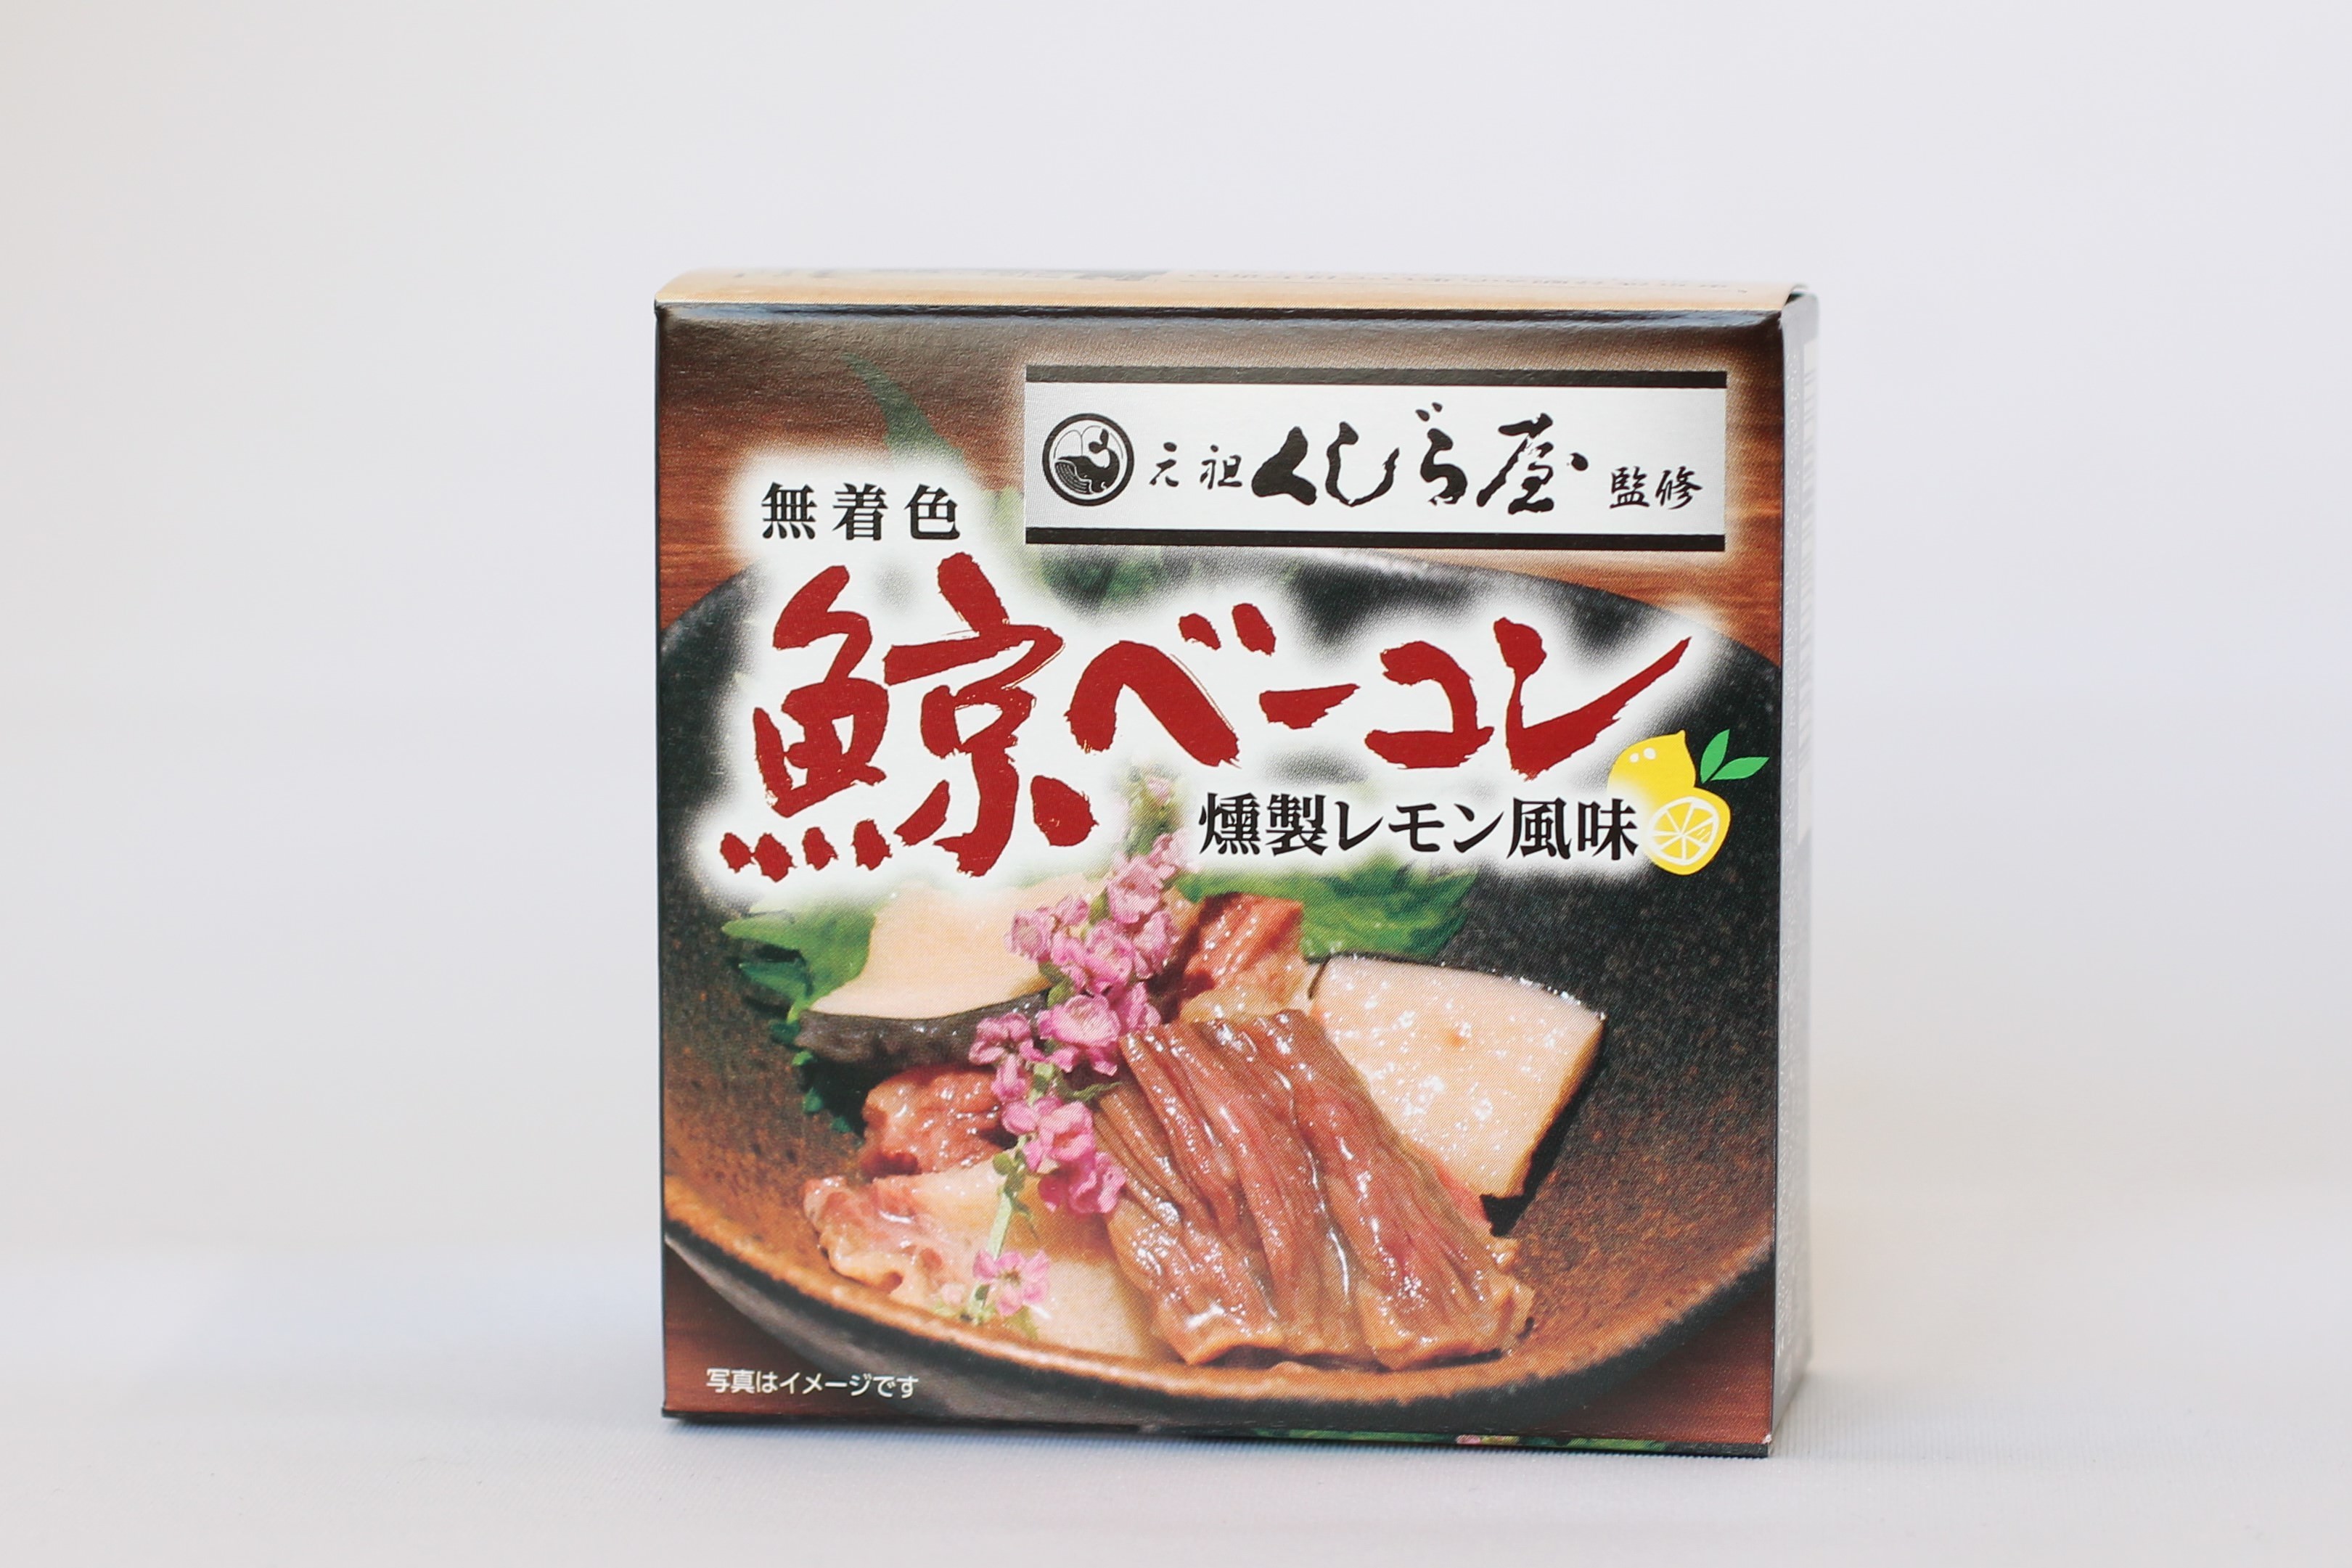 家飲みのお供に！渋谷「元祖くじら屋」監修の缶詰を発売　
箸で切れるほど柔らかい「無着色鯨ベーコン燻製レモン風味」